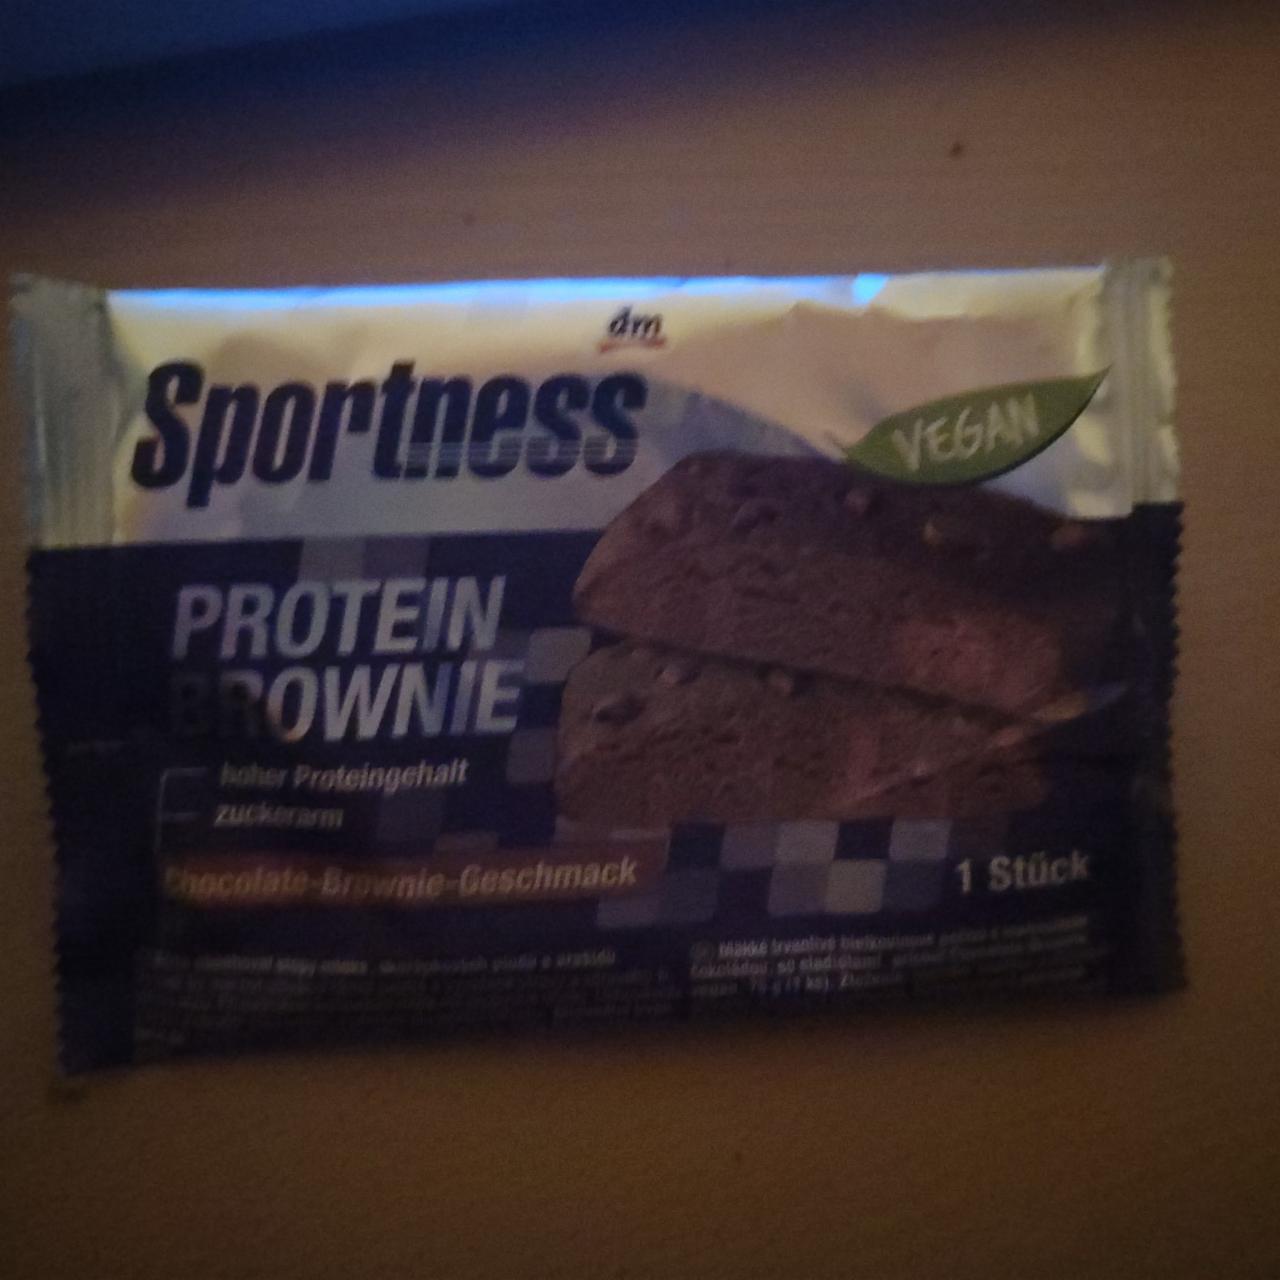 Fotografie - Protein Brownie Chocolate-Brownie-Geschmack Sportness